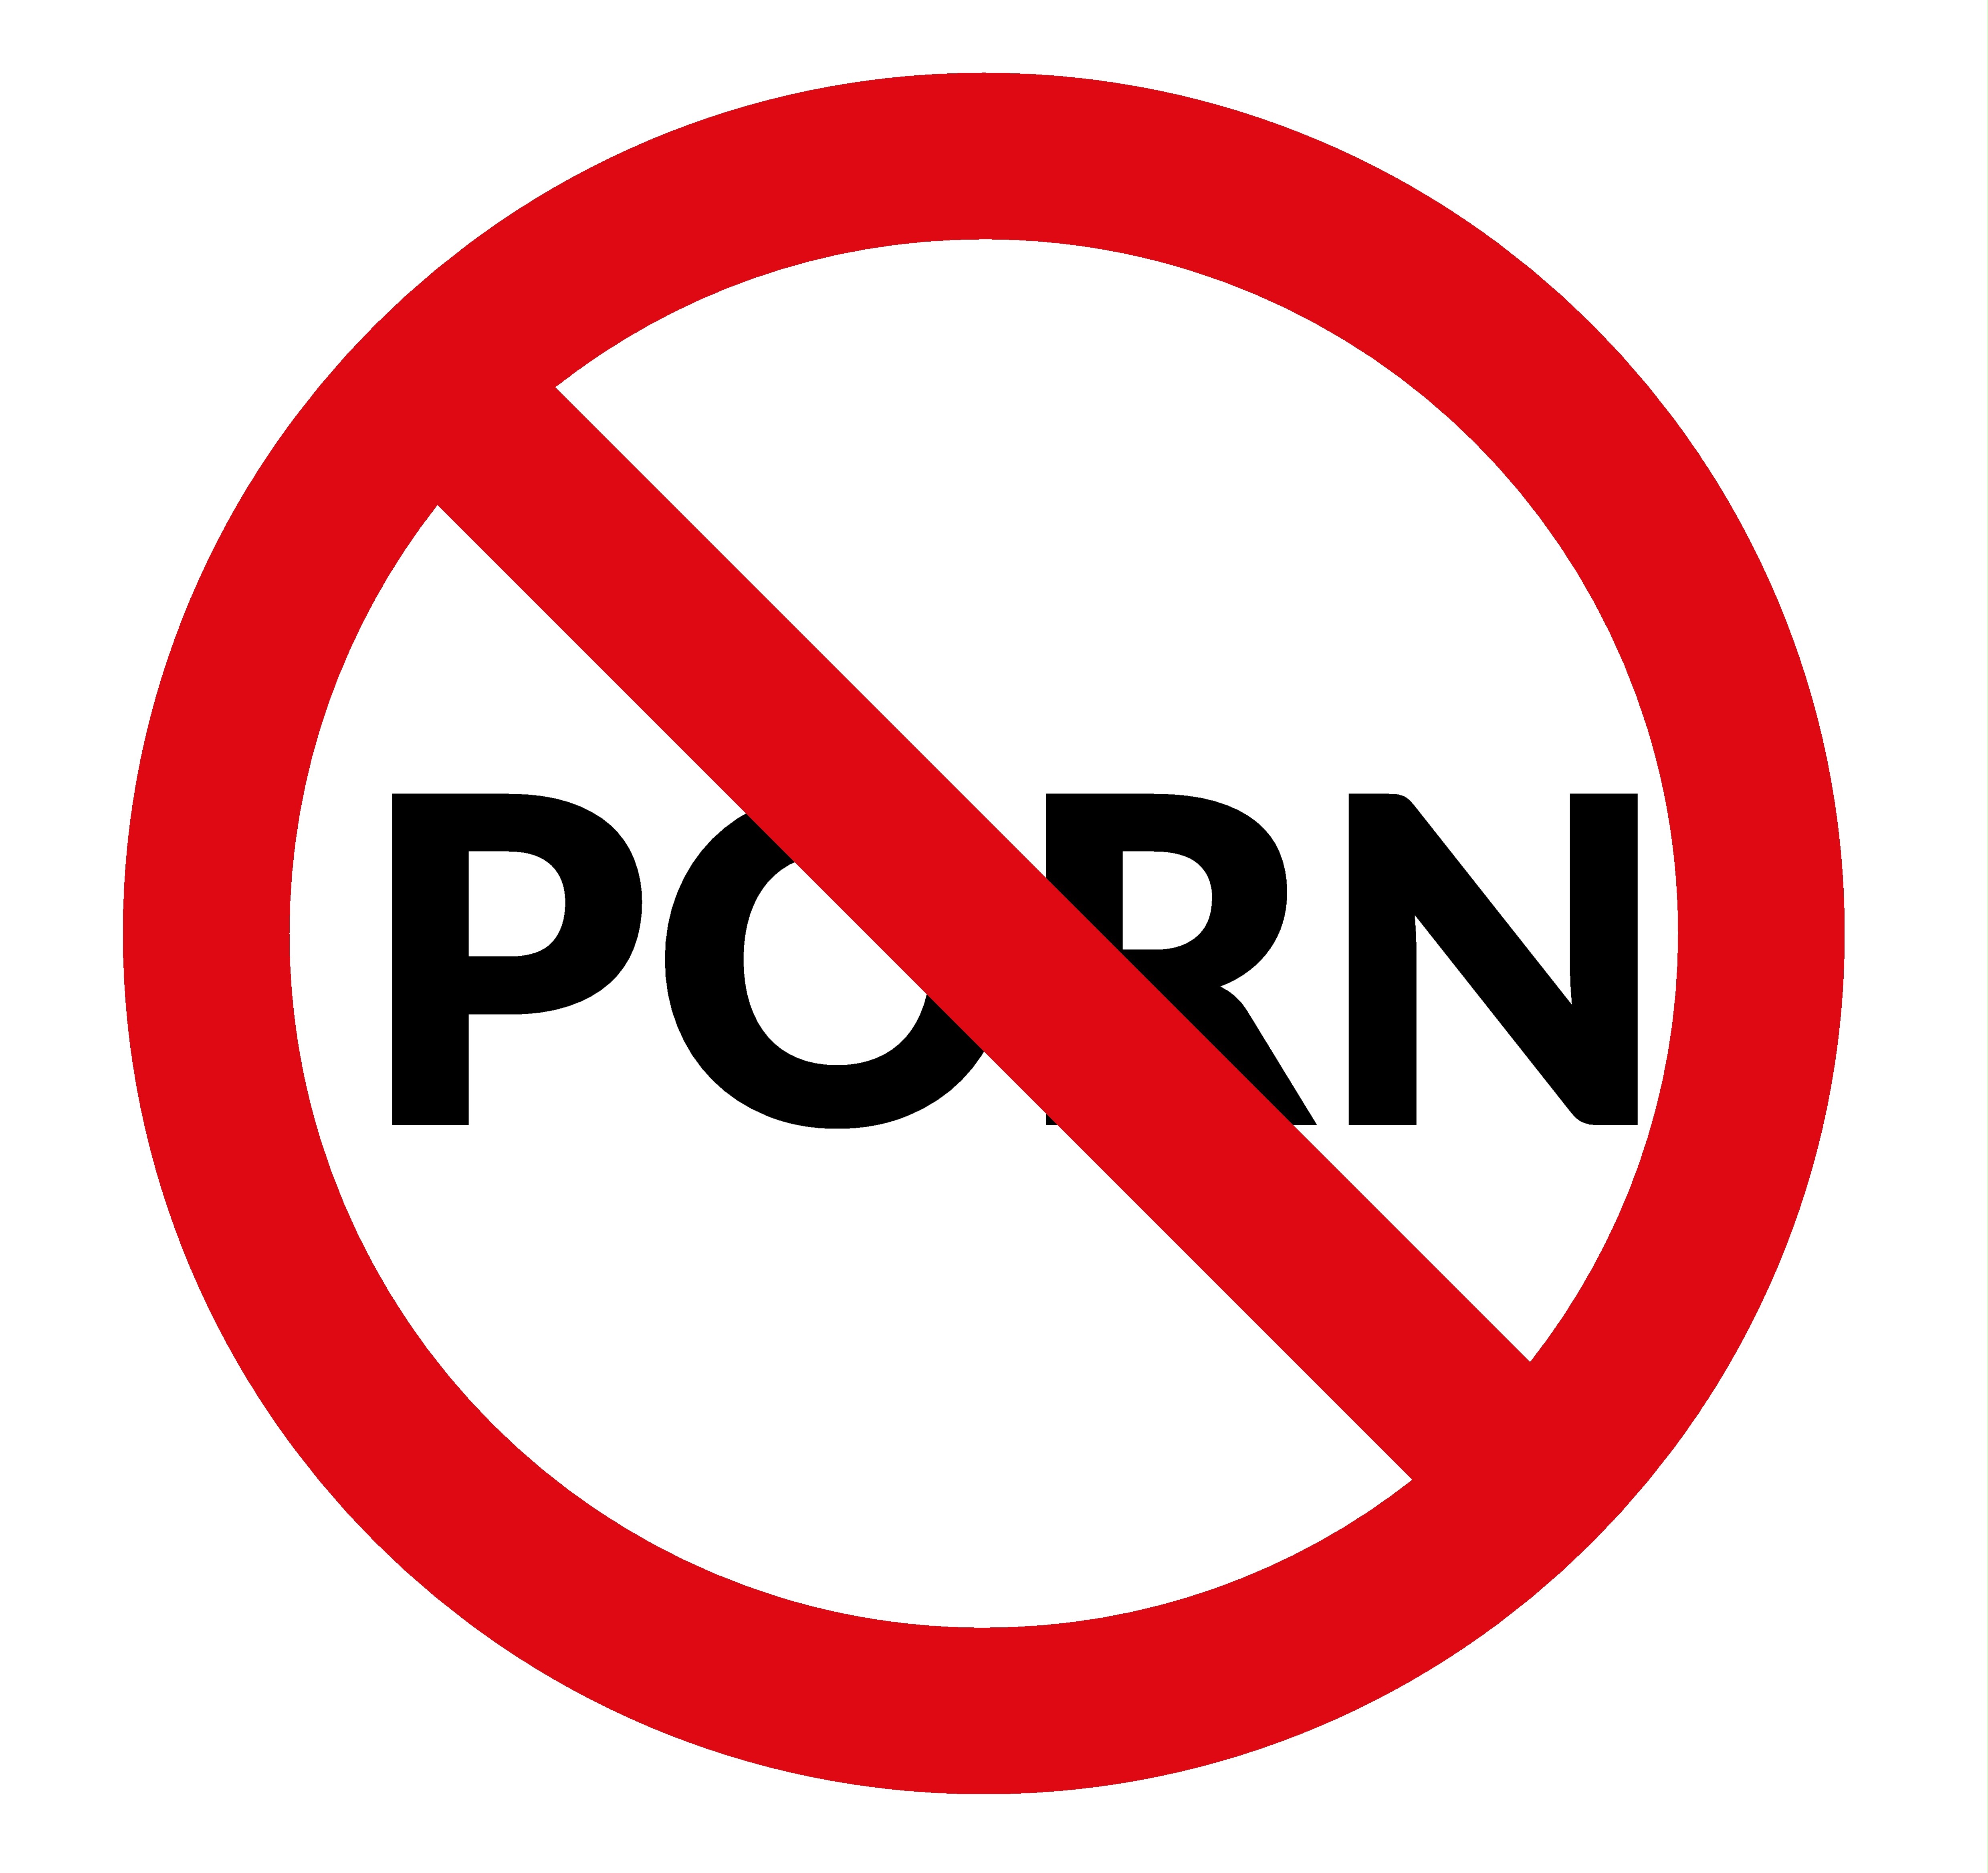 No porn - warning sign photo